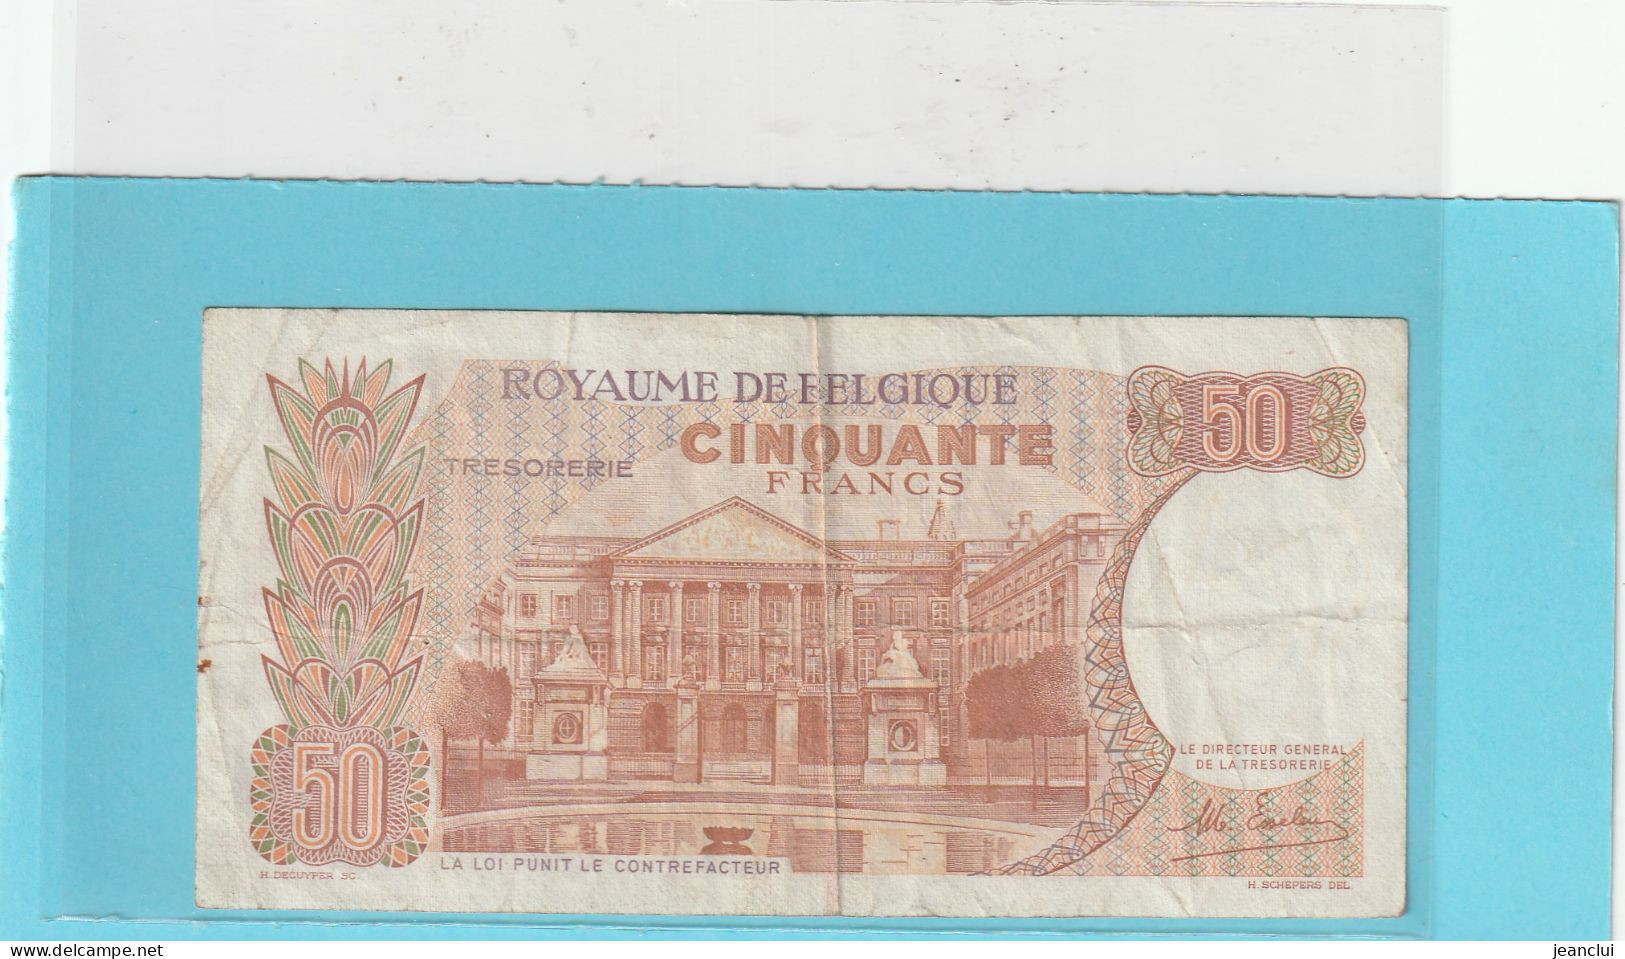 ROYAUME DE BELGIQUE  .  TRESORERIE  .  50 FRANCS . 16-5-1966 .  N° 177113993  .  2 SCANNES - 50 Francos